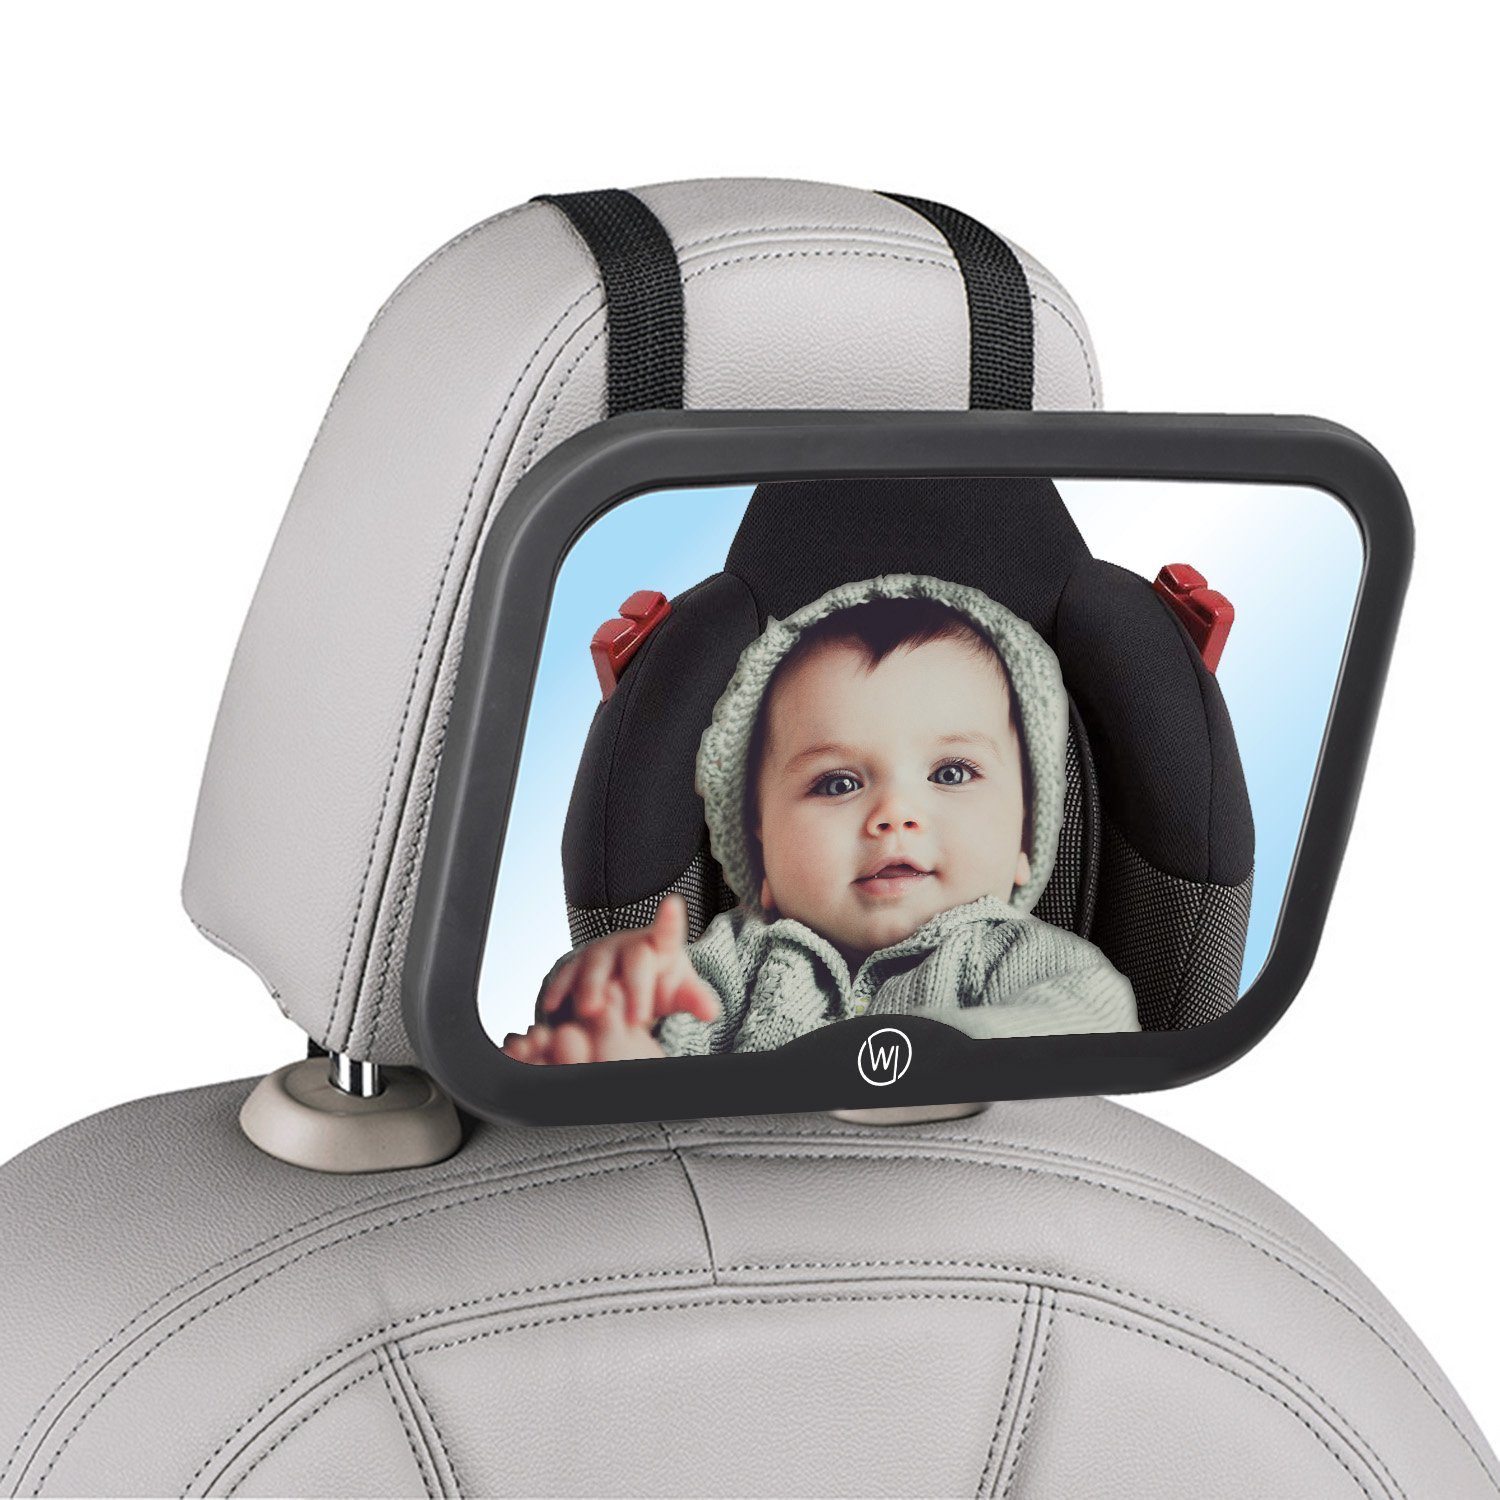 Wicked Chili Auto Baby Spiegel XL Sicherheit Rücksitzspiegel für Babyschale 